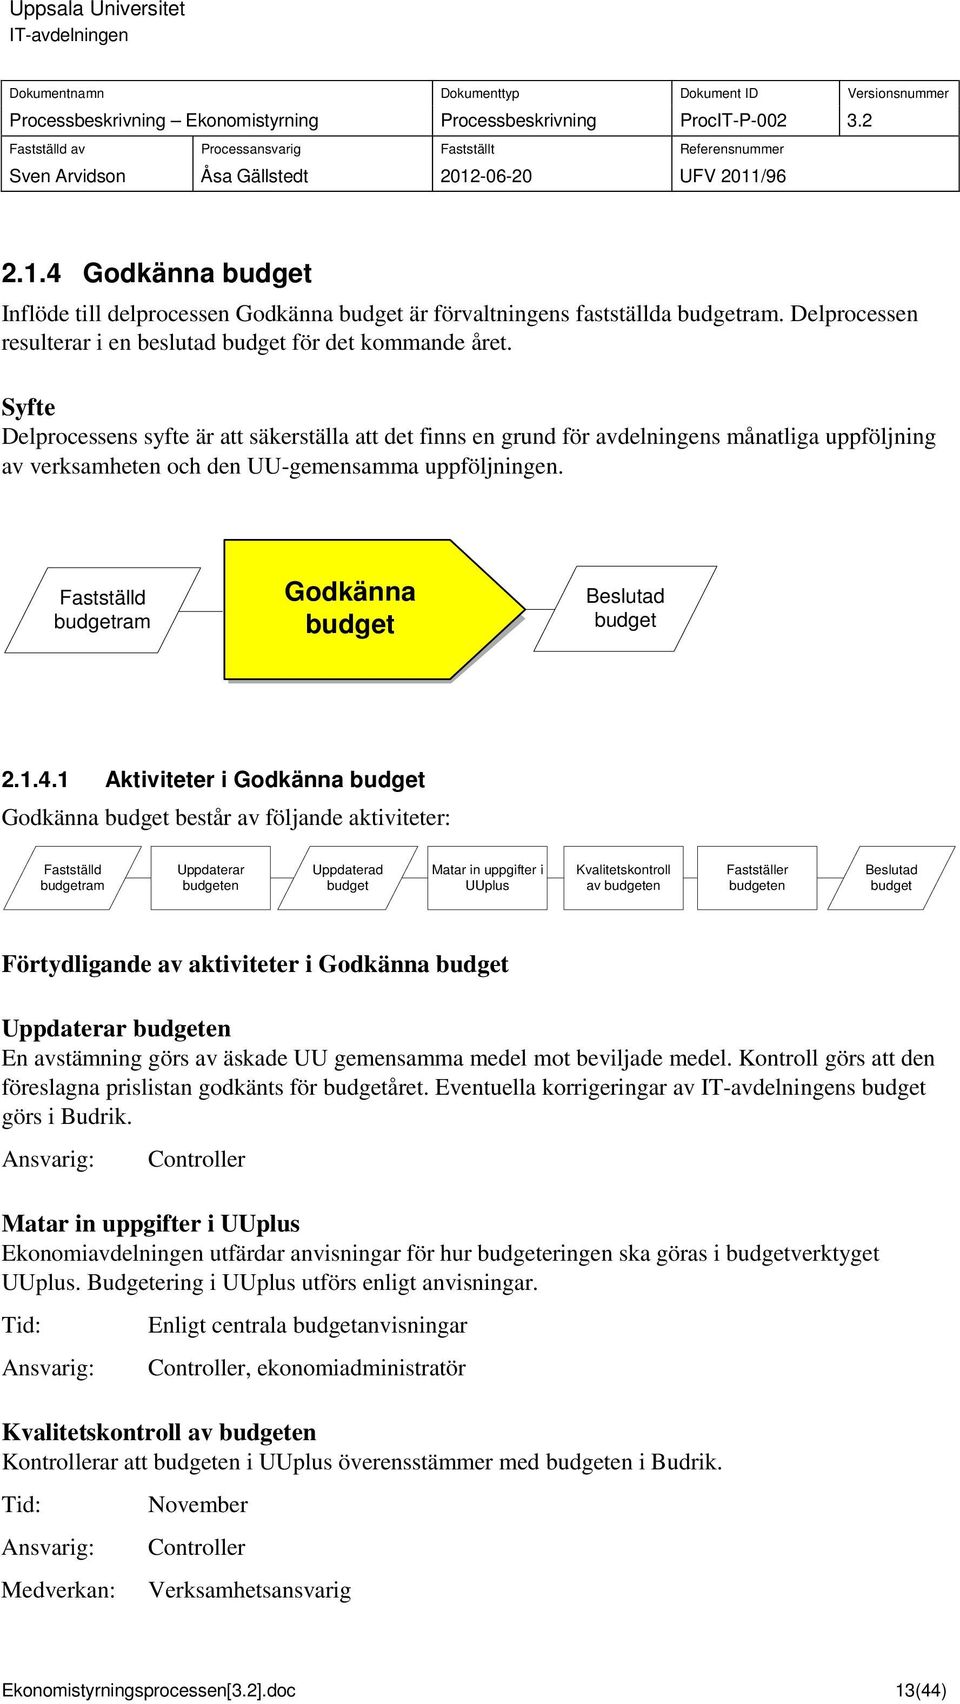 Fattälld budgetram delproce Godkänna budget Belutad budget 2.1.4.